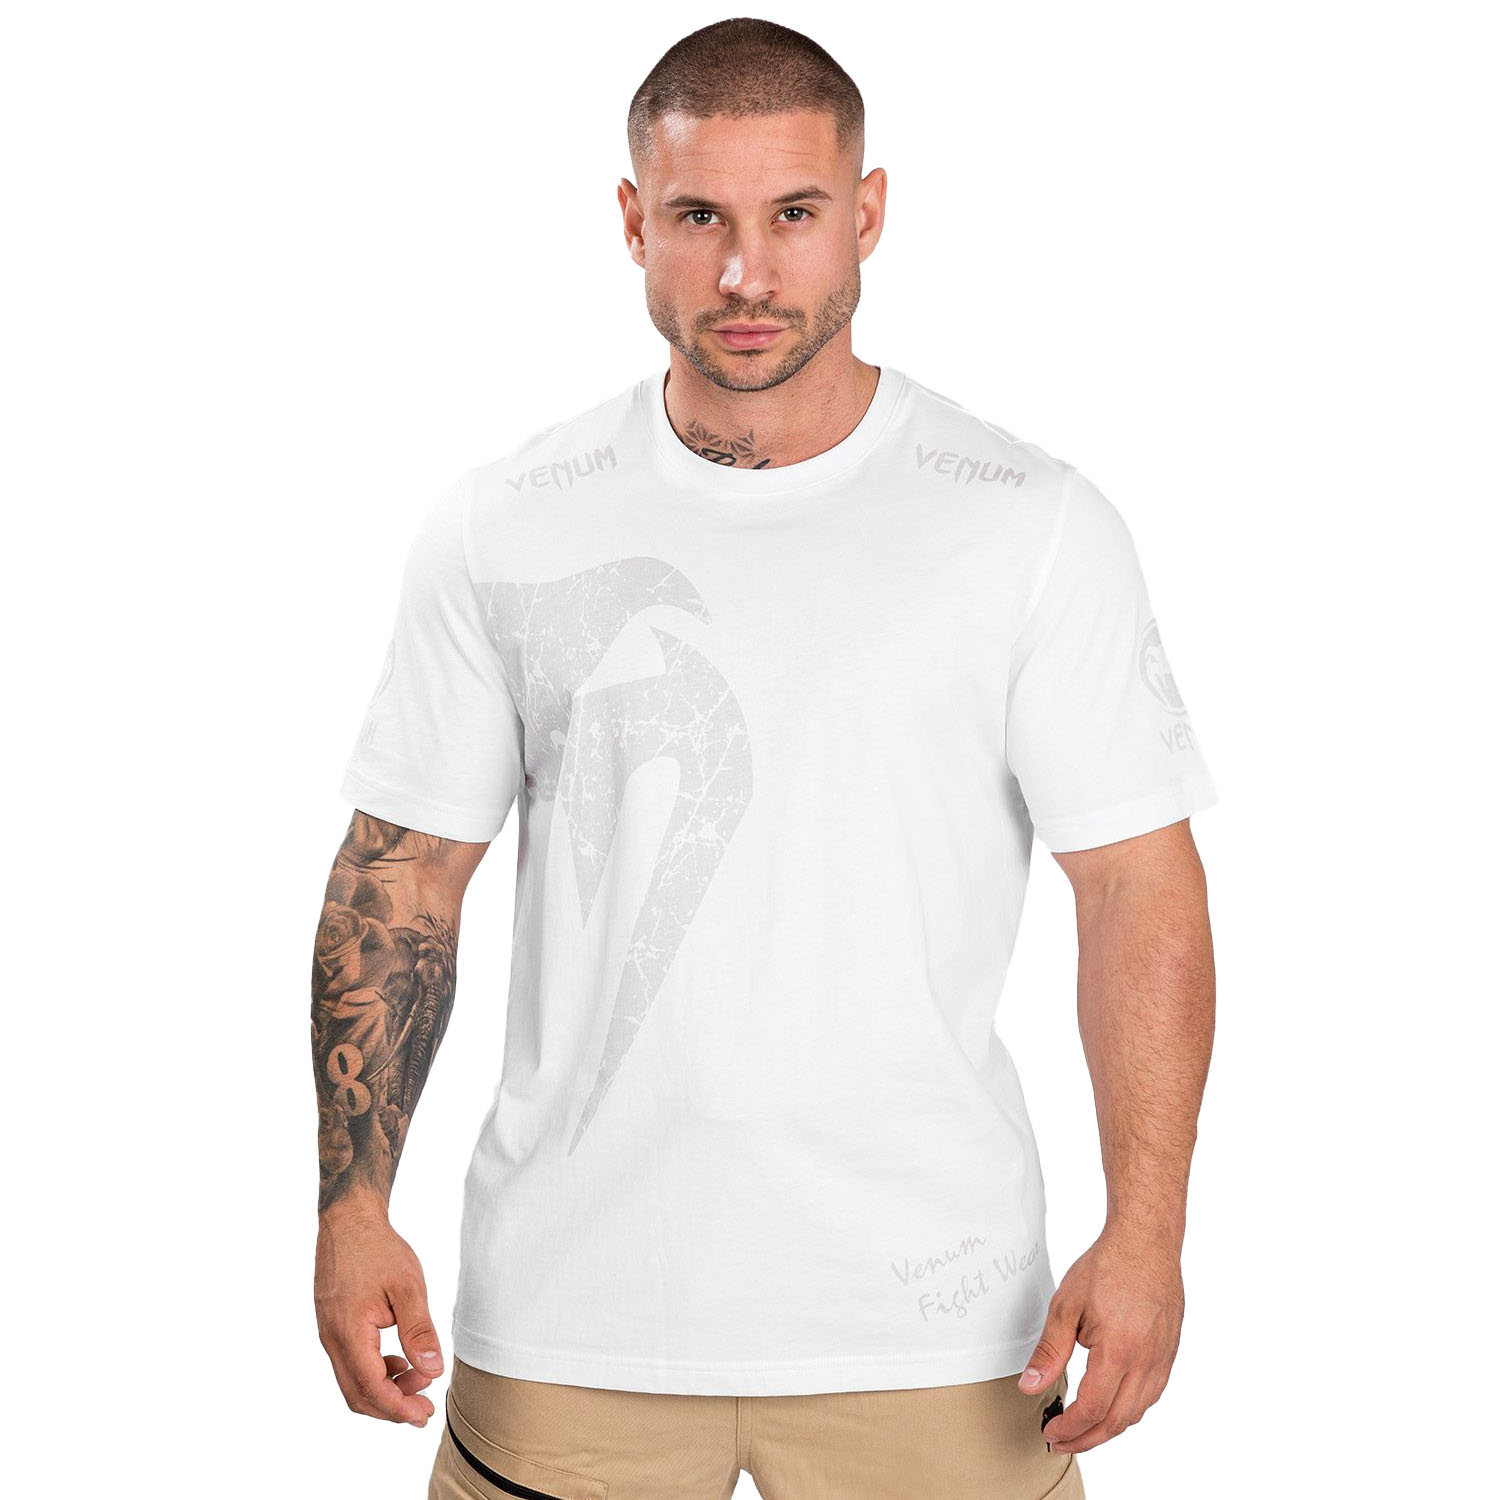 VENUM T-Shirt, Giant, white